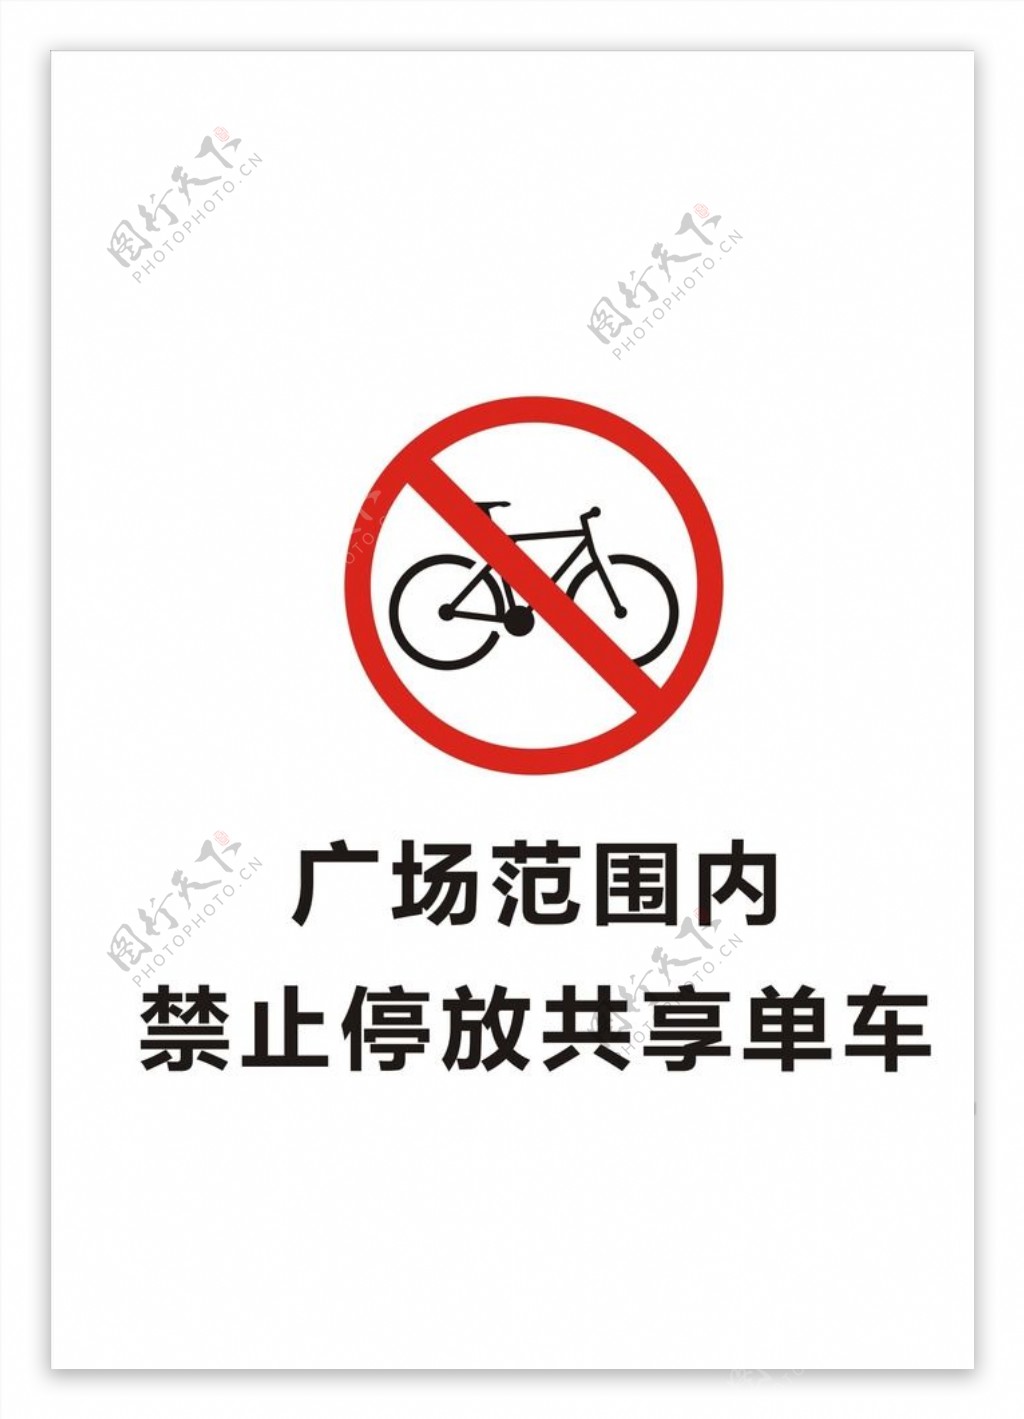 禁止停放共享单车